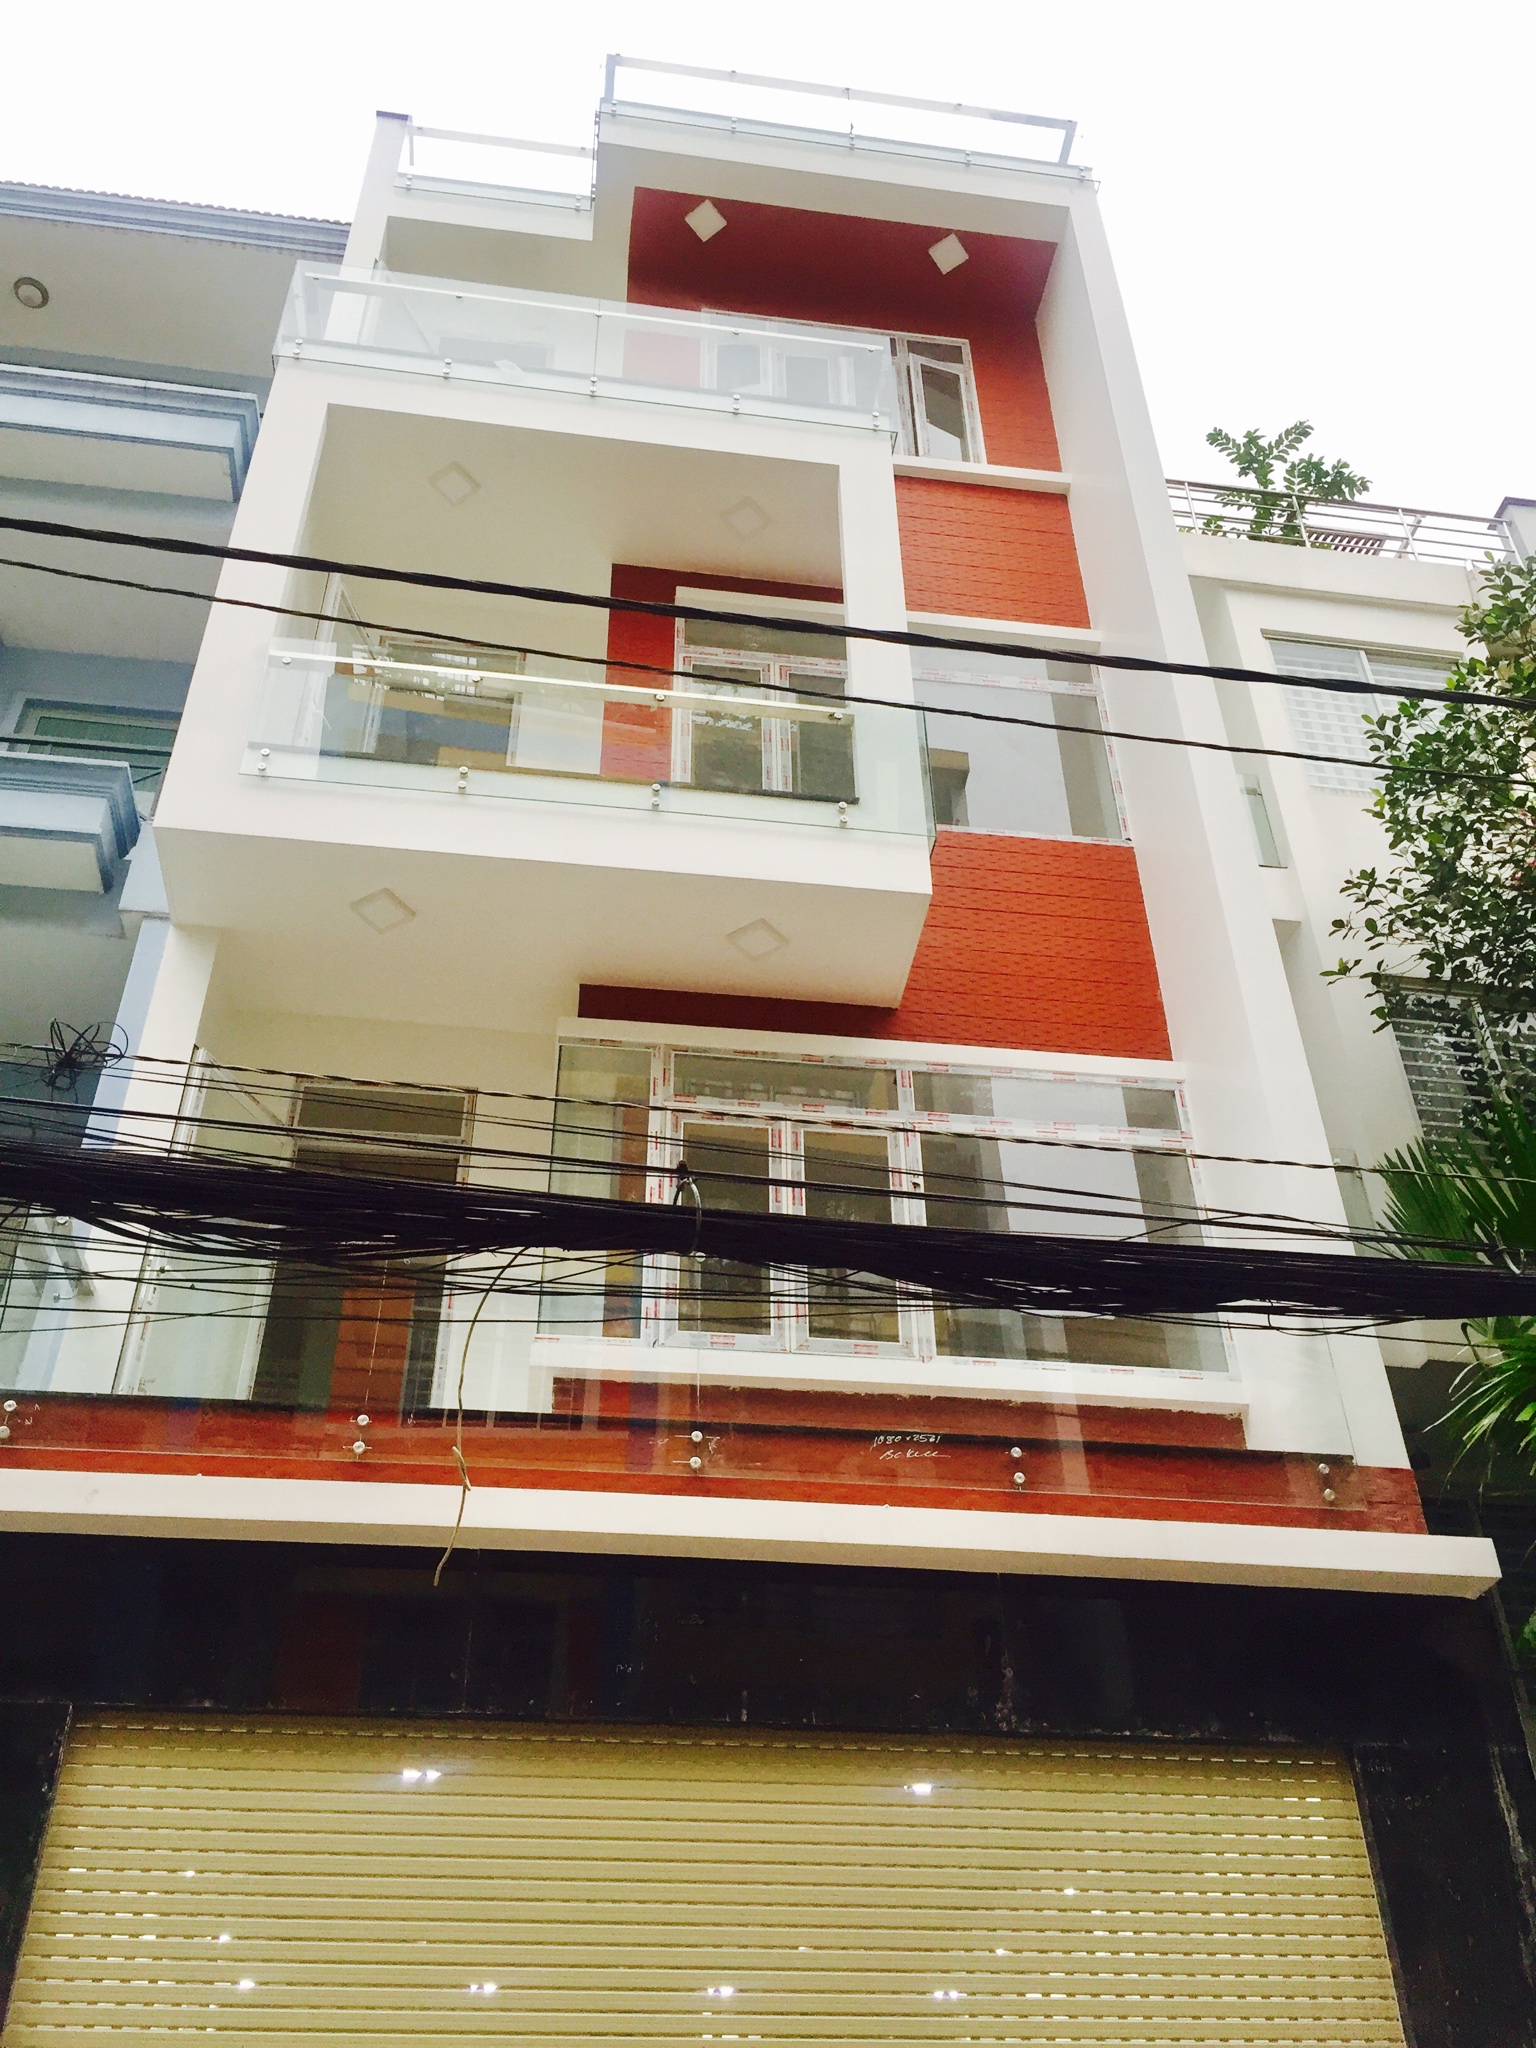 Bán nhà mặt tiền đường Đồng Nai, Quận 10, DT: 5 x 32m, 3 lầu, sân thượng. LH; BẢO 0919 80 4334